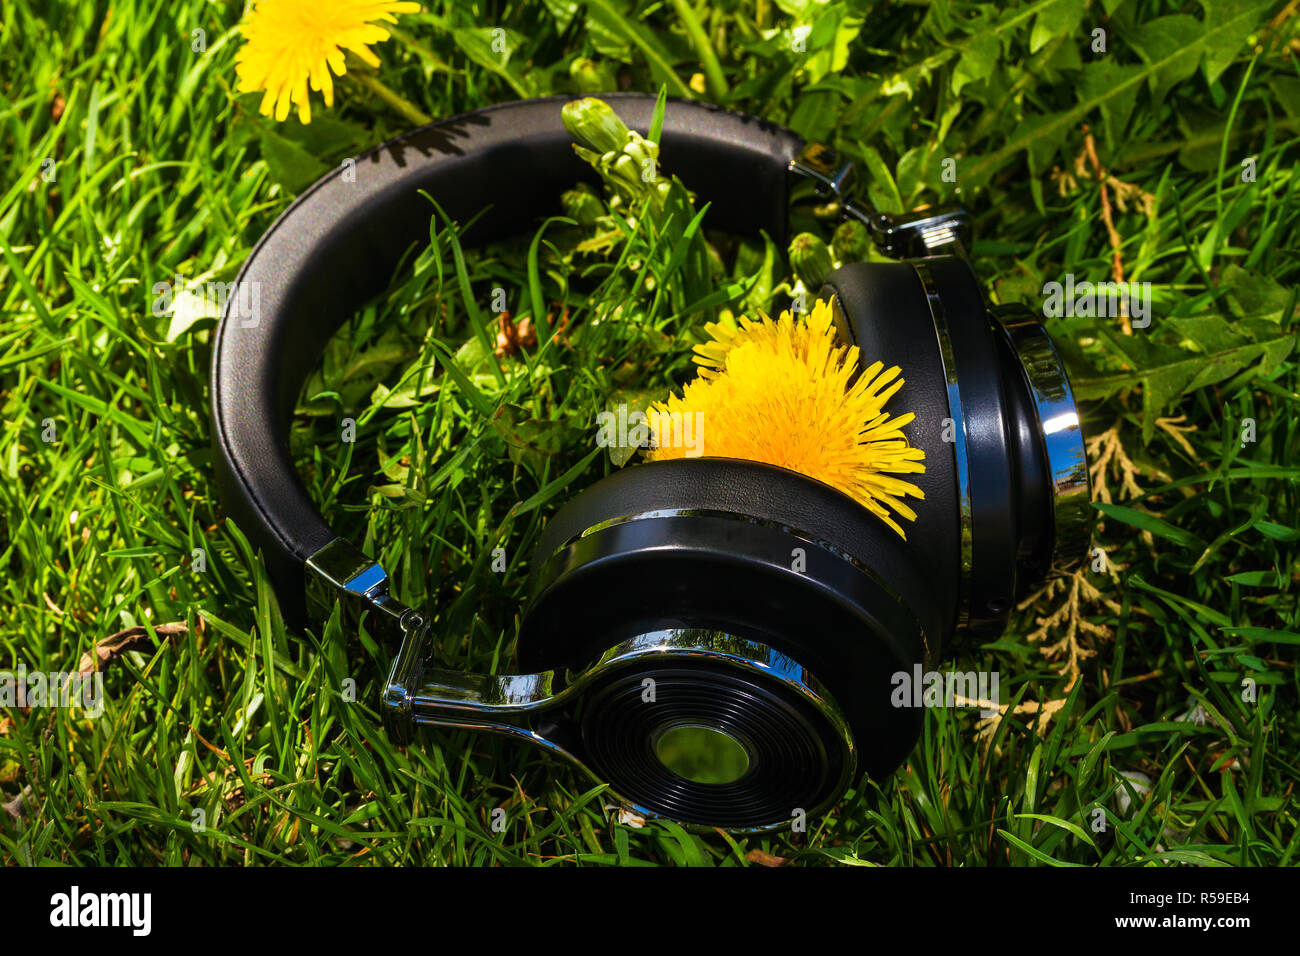 wireless travel headphones Stock Photo